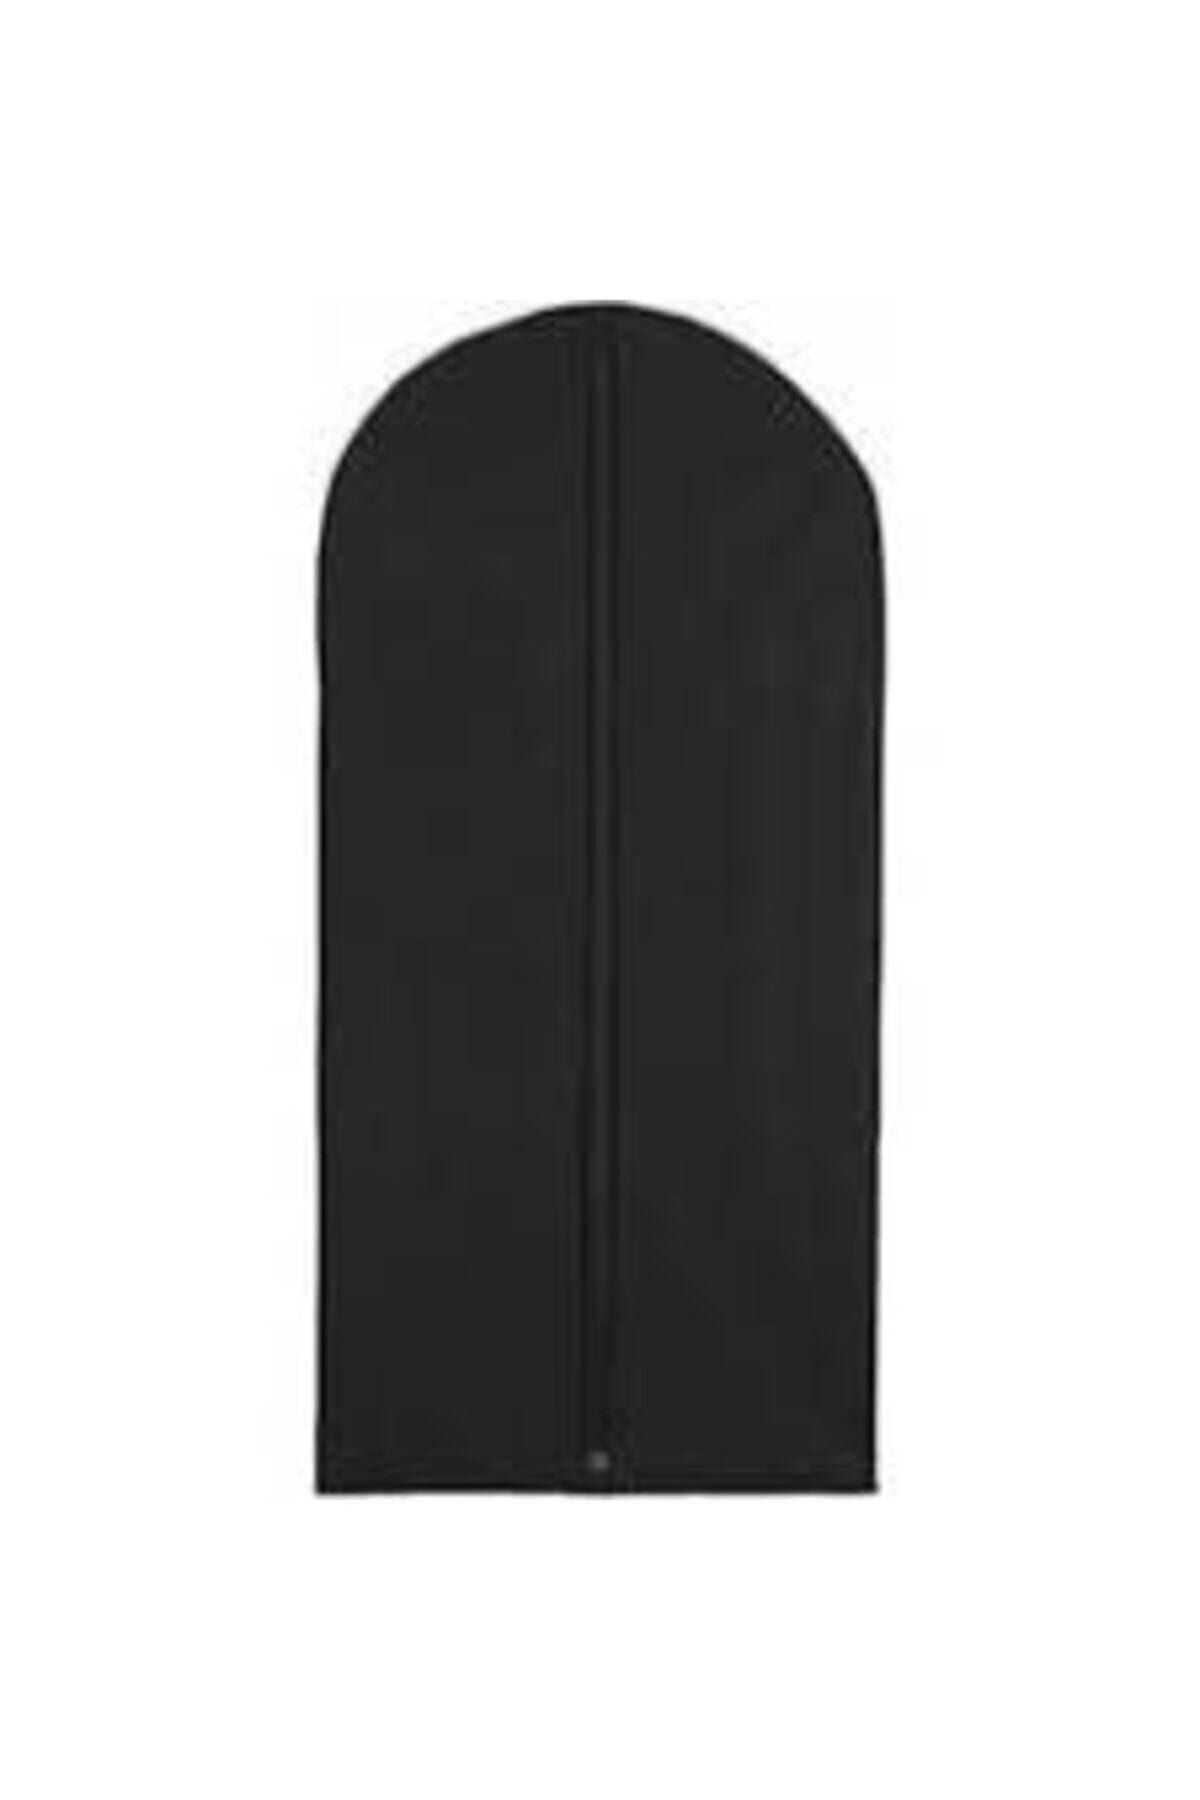 kolay-alışveriş (5 ADET) Abiye Elbise Kılıf Gamboç 60x160 Siyah Tela Nonvoven Uzun Boy